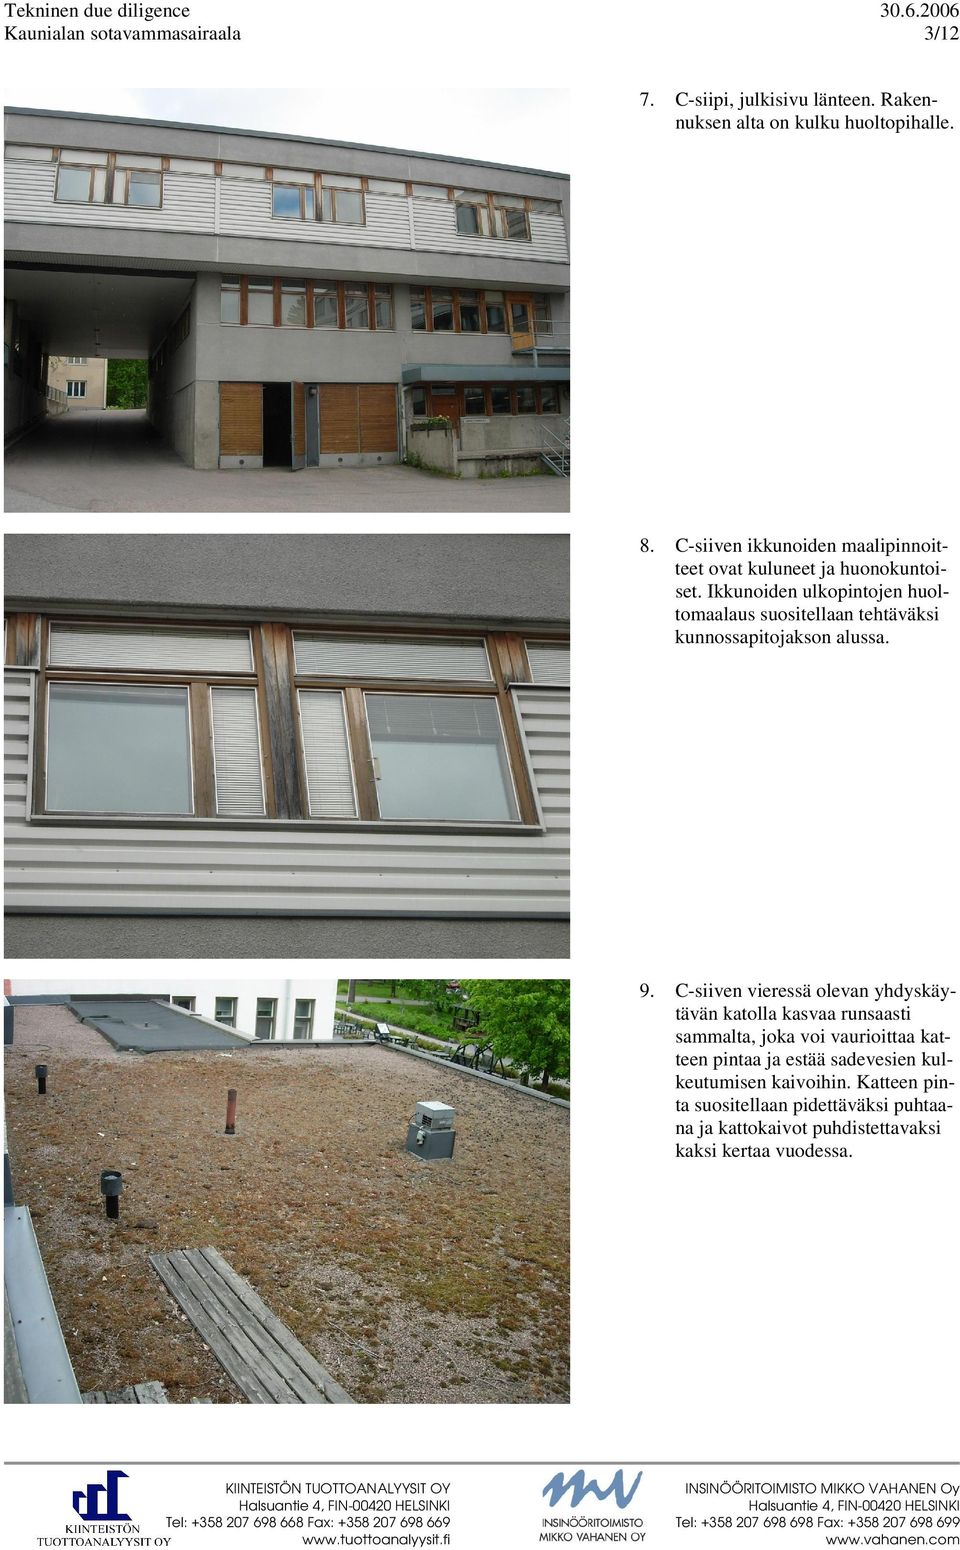 Ikkunoiden ulkopintojen huoltomaalaus suositellaan tehtäväksi kunnossapitojakson alussa. 9.